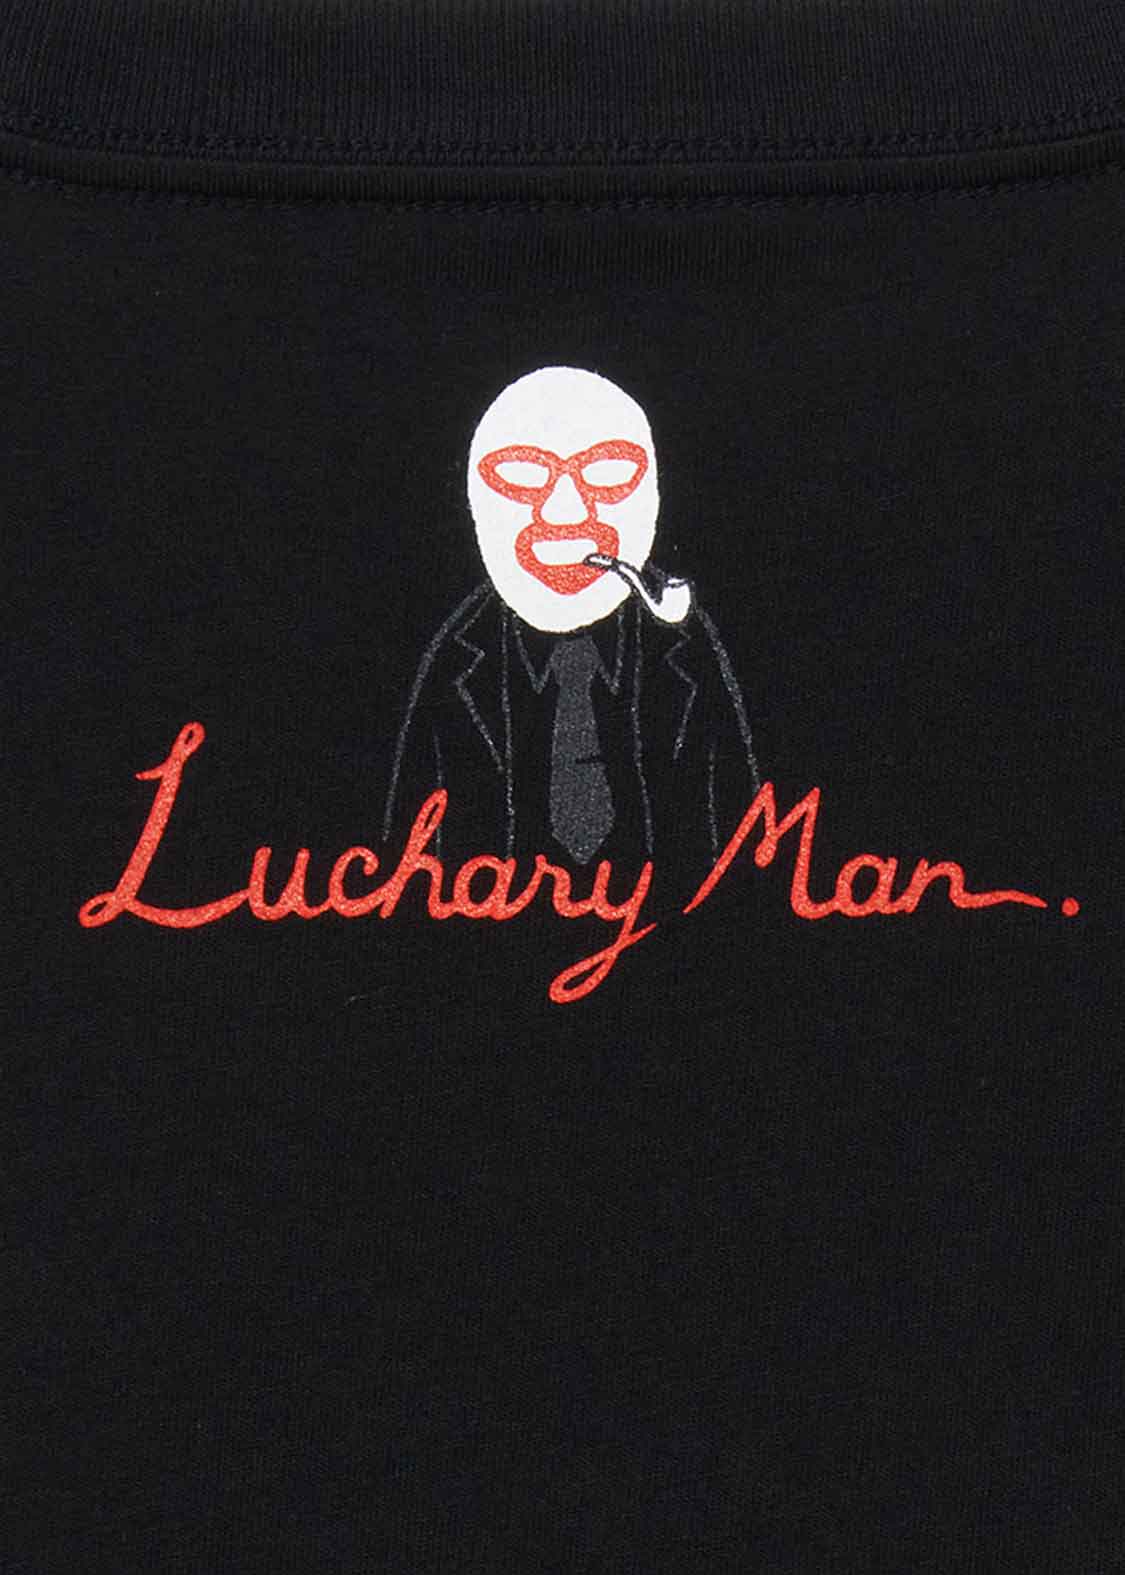 Lucharyman